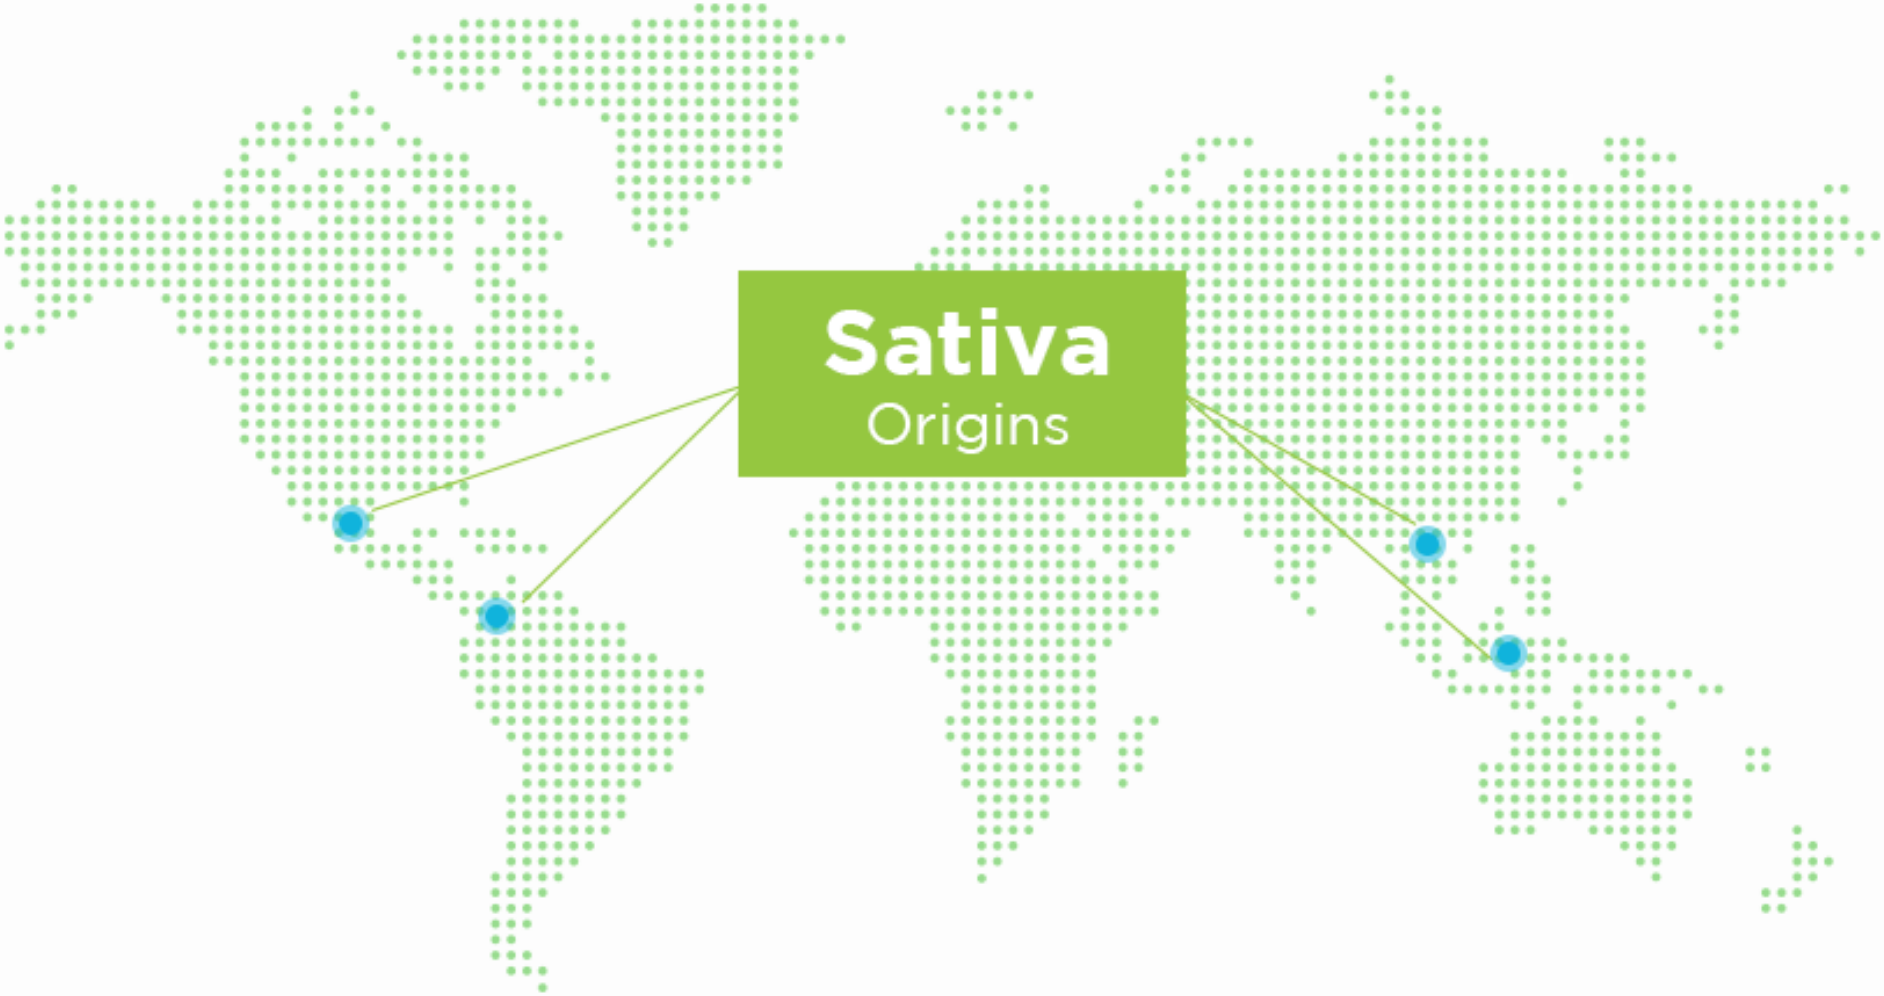 Sativa origins map